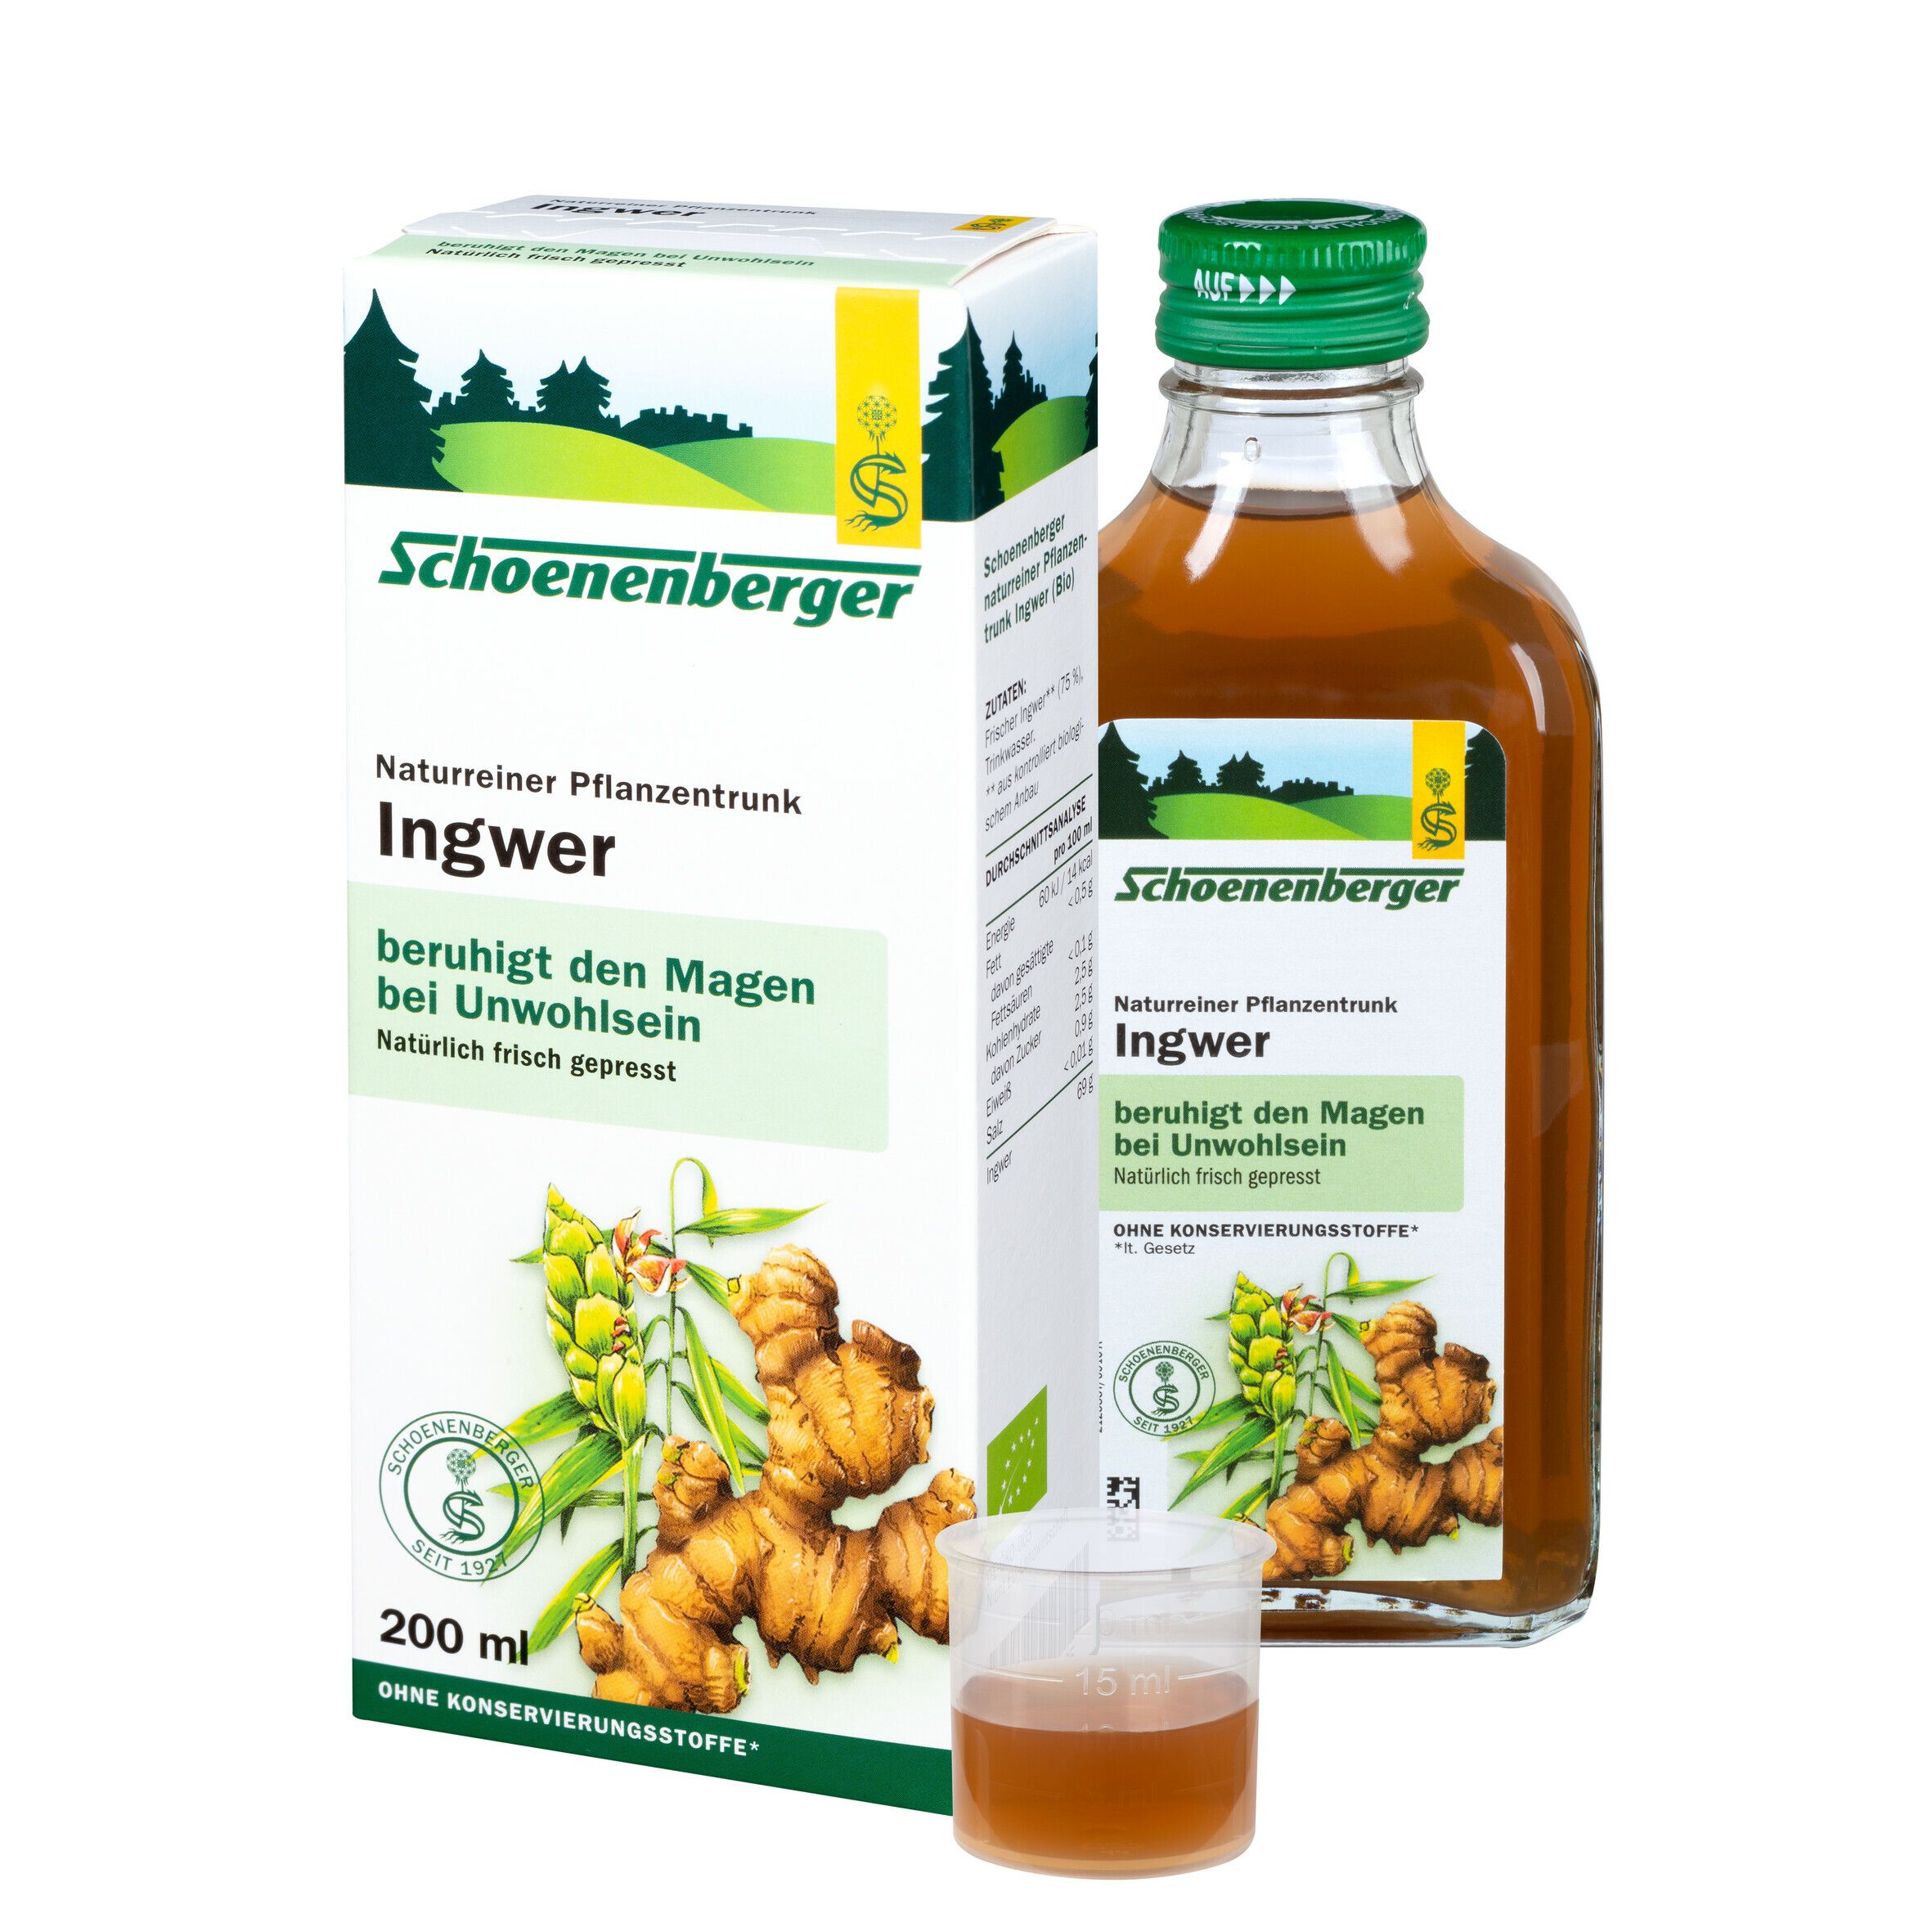 Schoenenberger® Ingwer, Naturreiner Pflanzentrunk